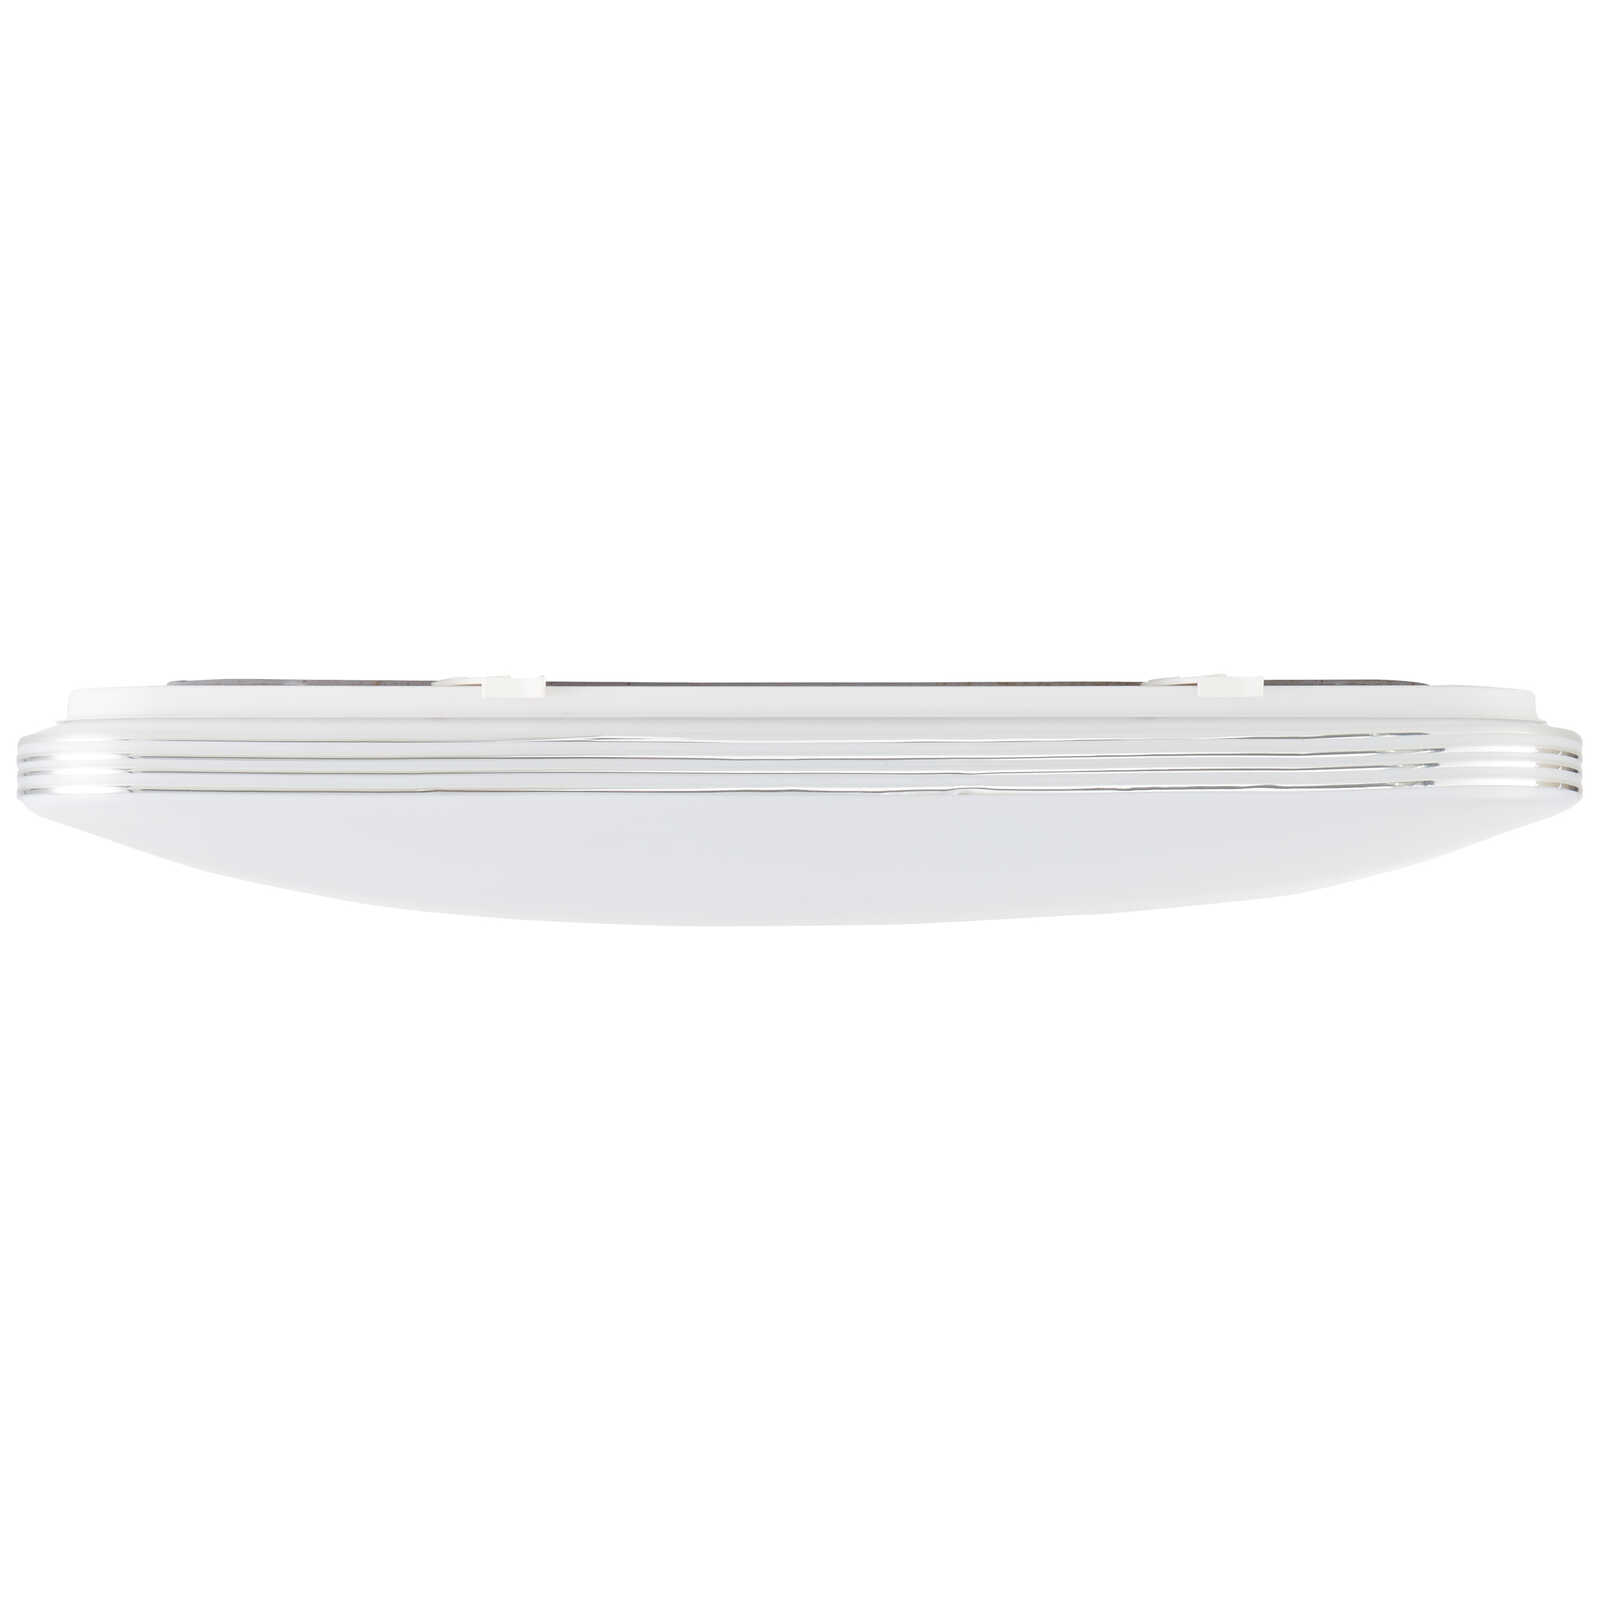             Lampada da parete e soffitto in plastica - Amelie - argento, bianco
        